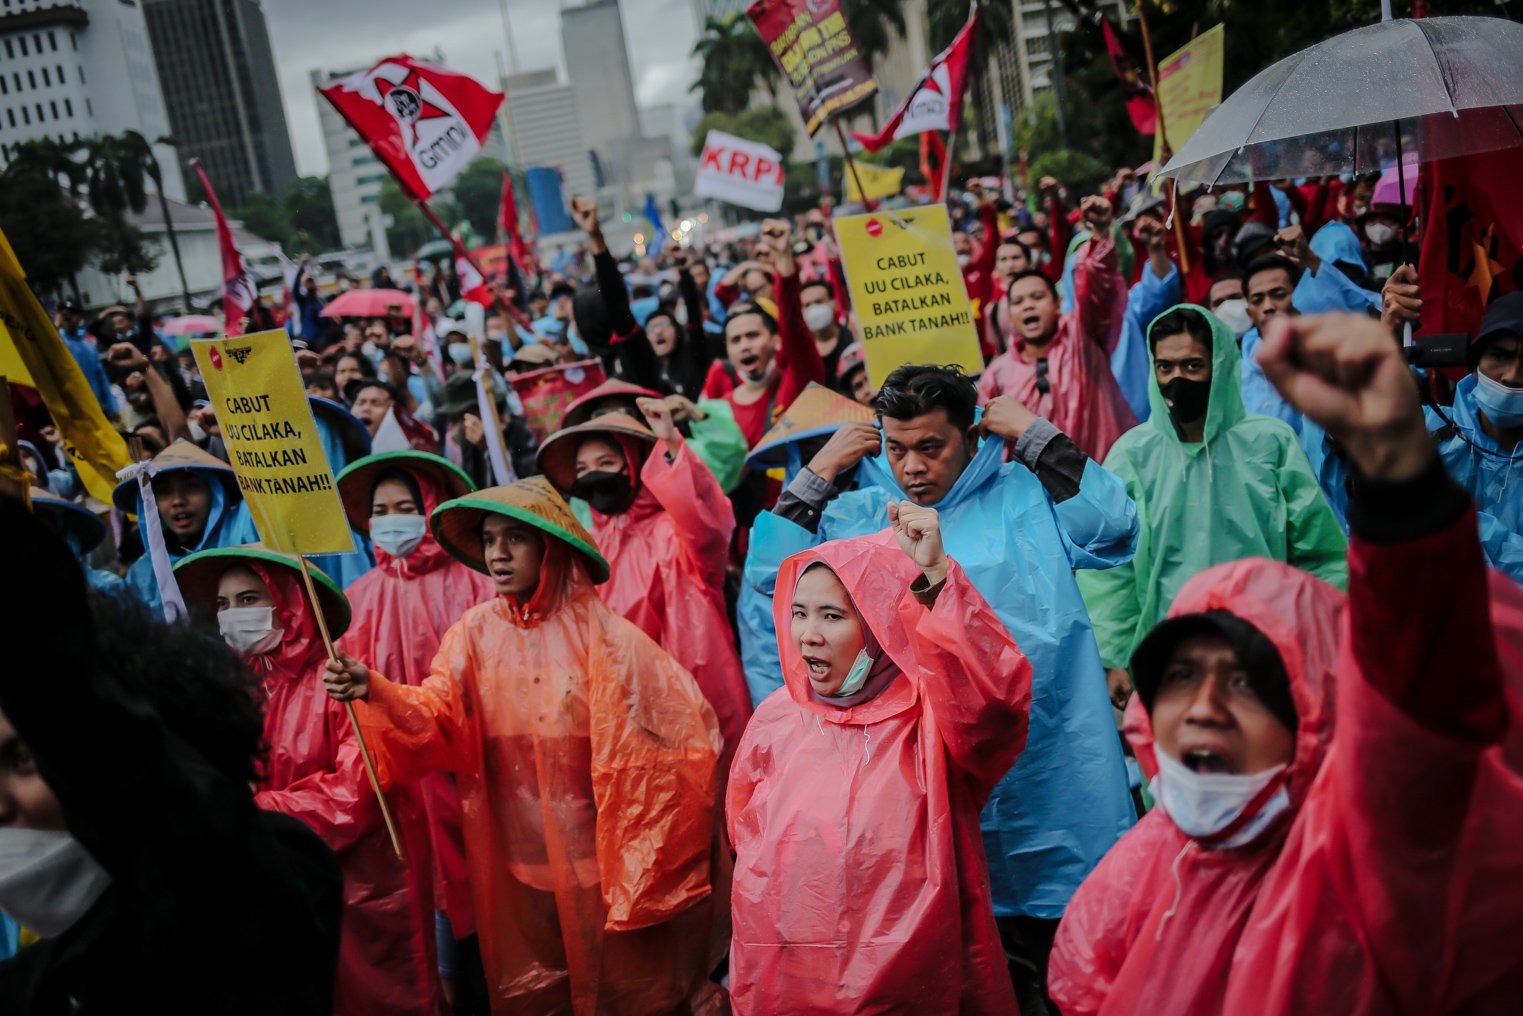 Masa aksi menggunakan jas hujan mengepalkan tangan kiri saat melakukan unjuk rasa di Wilayah Patung Kuda, Jakarta, Kamis (28/10/2021). Dalam aksinya demonstran yang tergabung dari mahasiswa dan buruh meyuarakan 13 tuntutan diantaranya Cabut Omnibus Law dan seluruh PP turunannya.